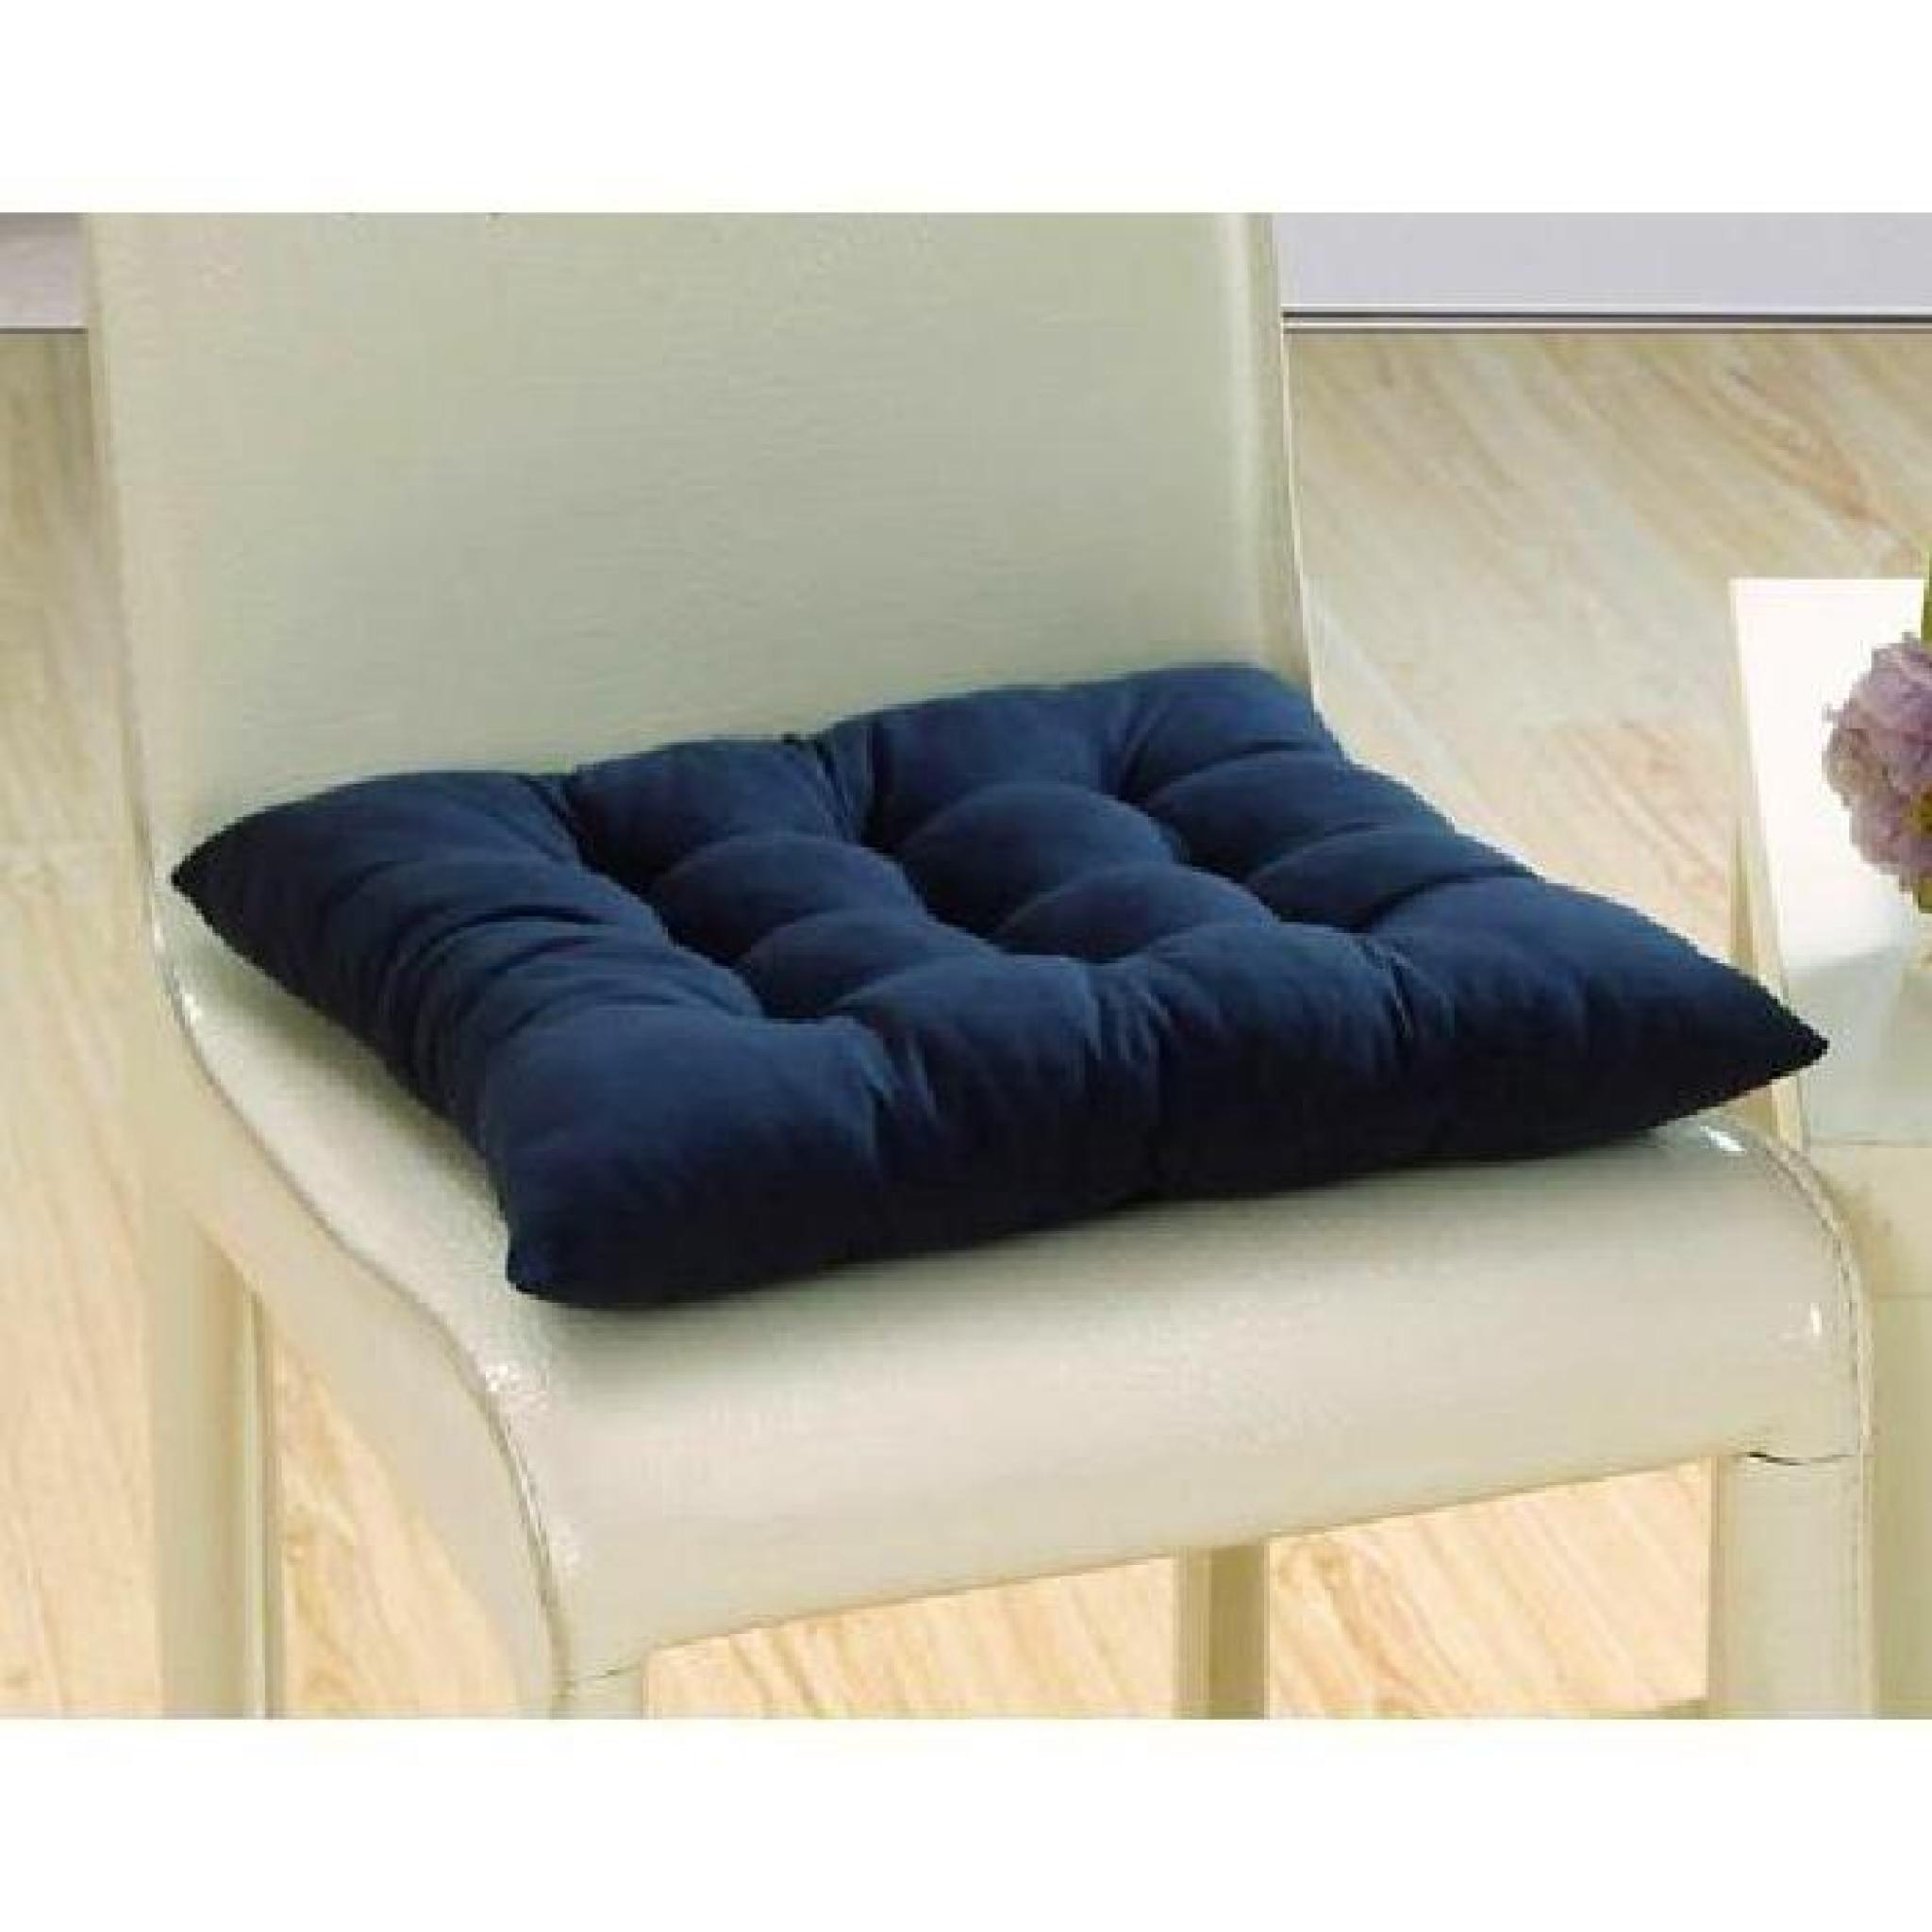 1*Galettes de chaise/ coussin de chaise à assise matelassée - double / 40x40cm -orange   pas cher